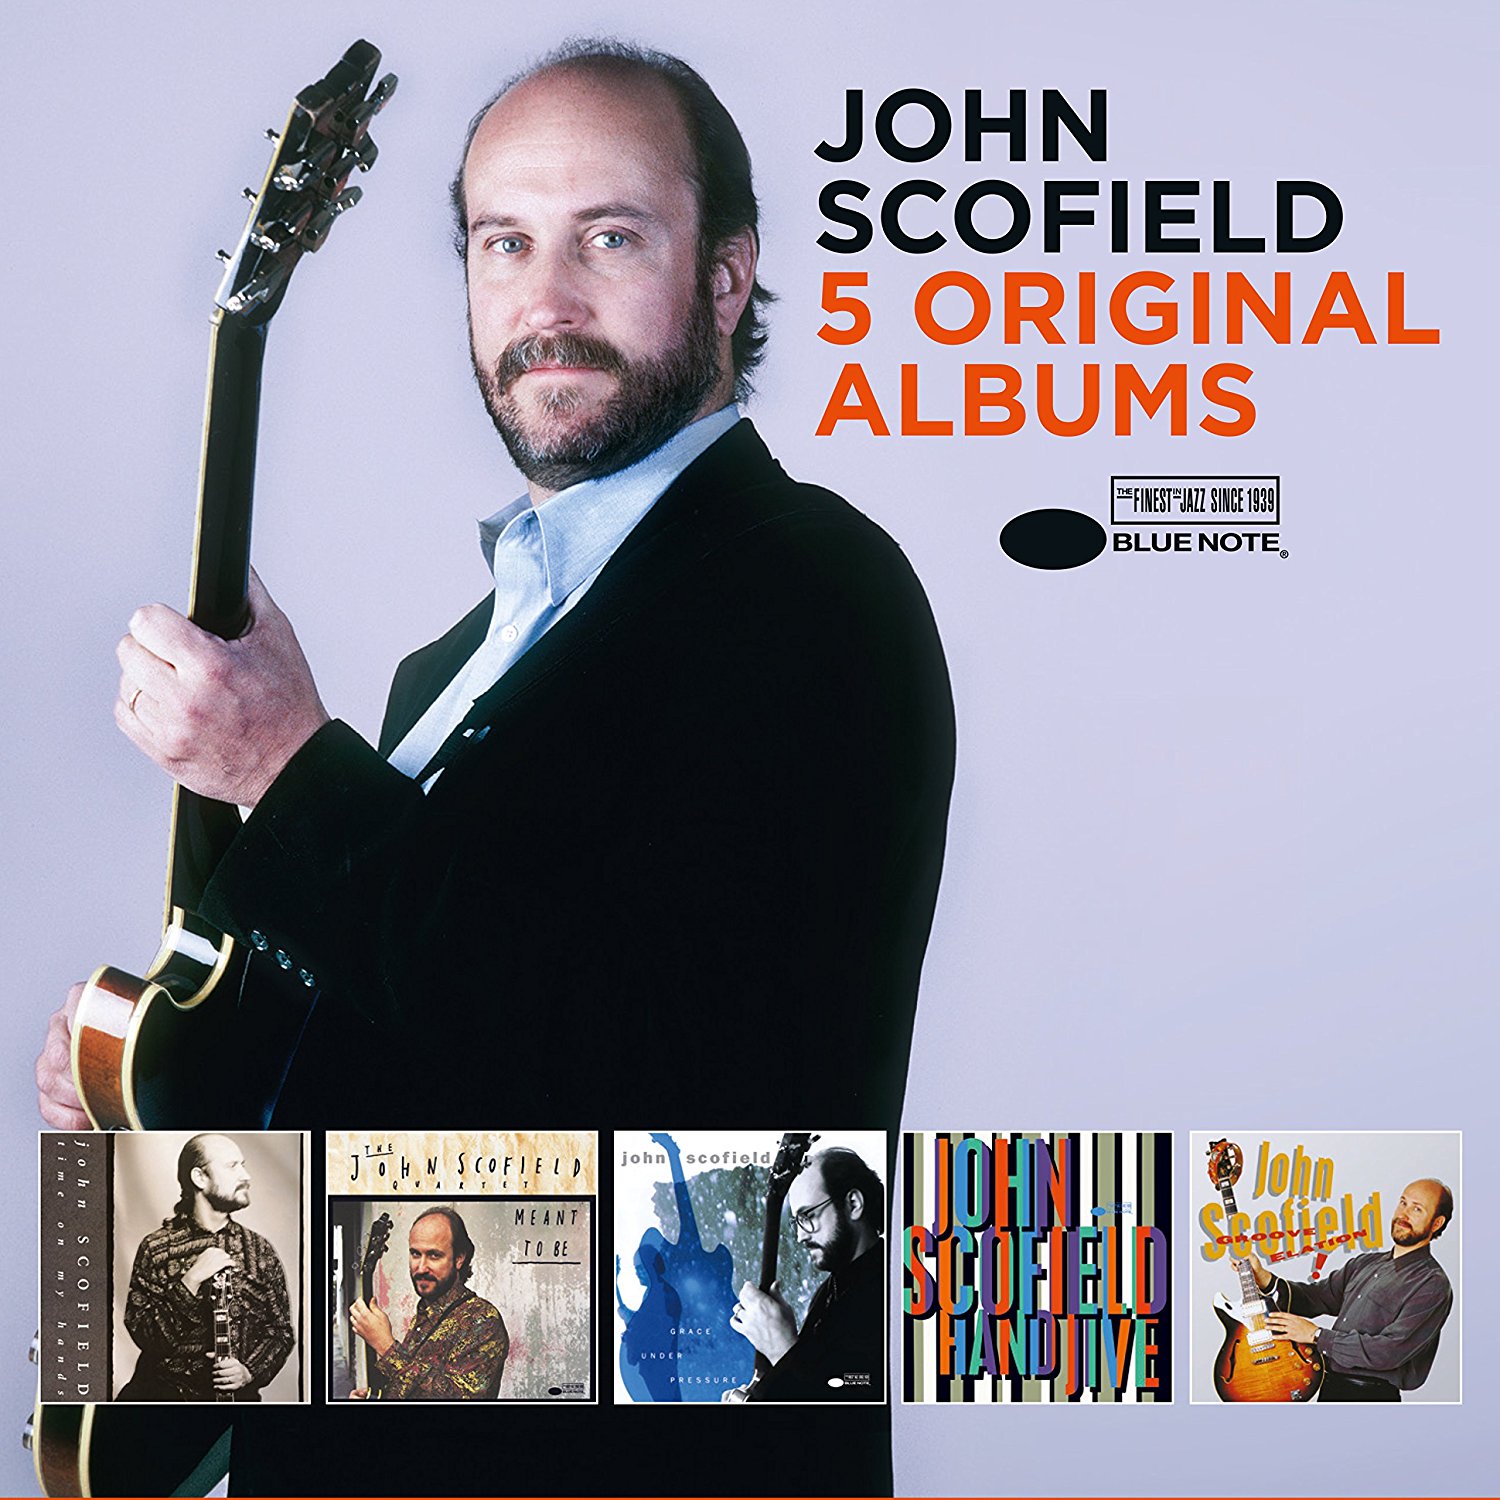 JOHN SCOFIELD - 5 Original Albums cover 